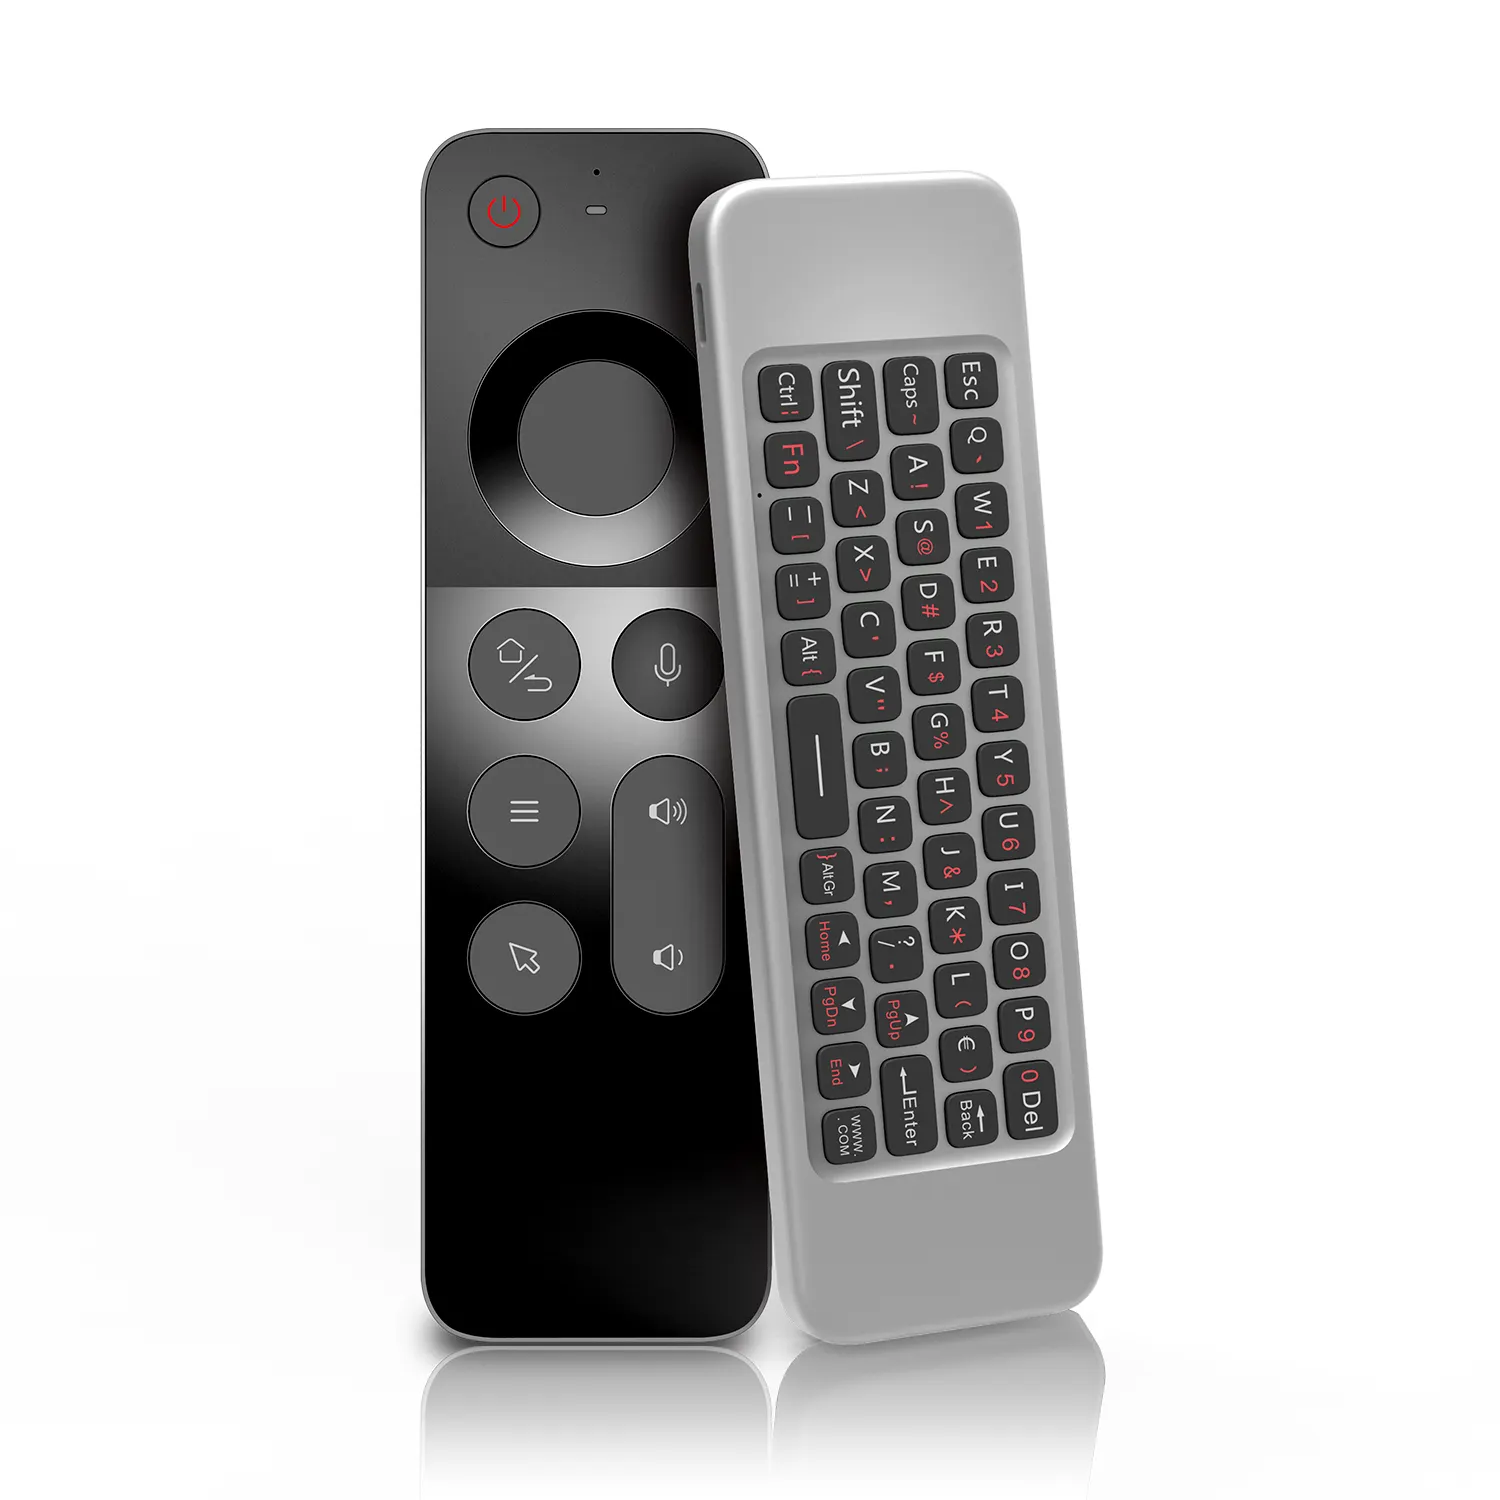 جديد تصميم W3 ماوس هوائي الأشعة تحت الحمراء IR التعلم الوجهين اللاسلكية الذكية صوت لوحة مفاتيح صغيرة تحلق ماوس مع الجيروسكوب